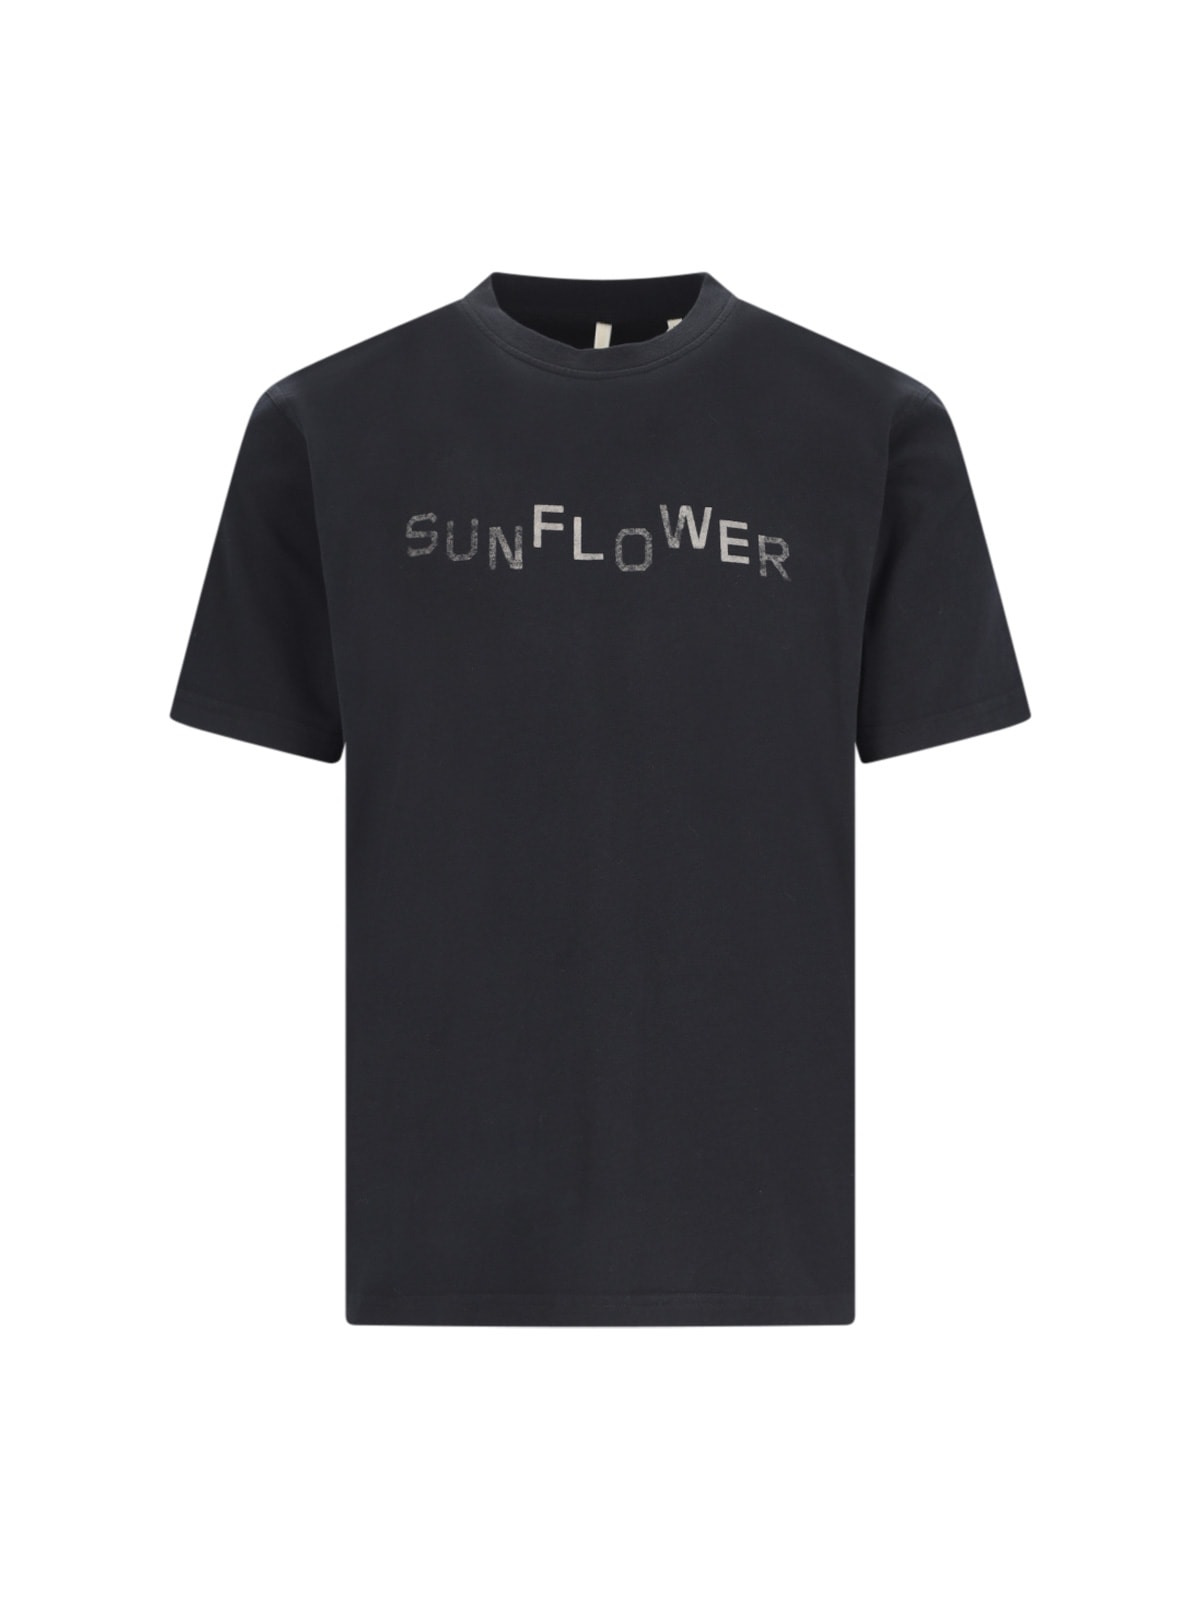 Sunflower T-shirt In Black